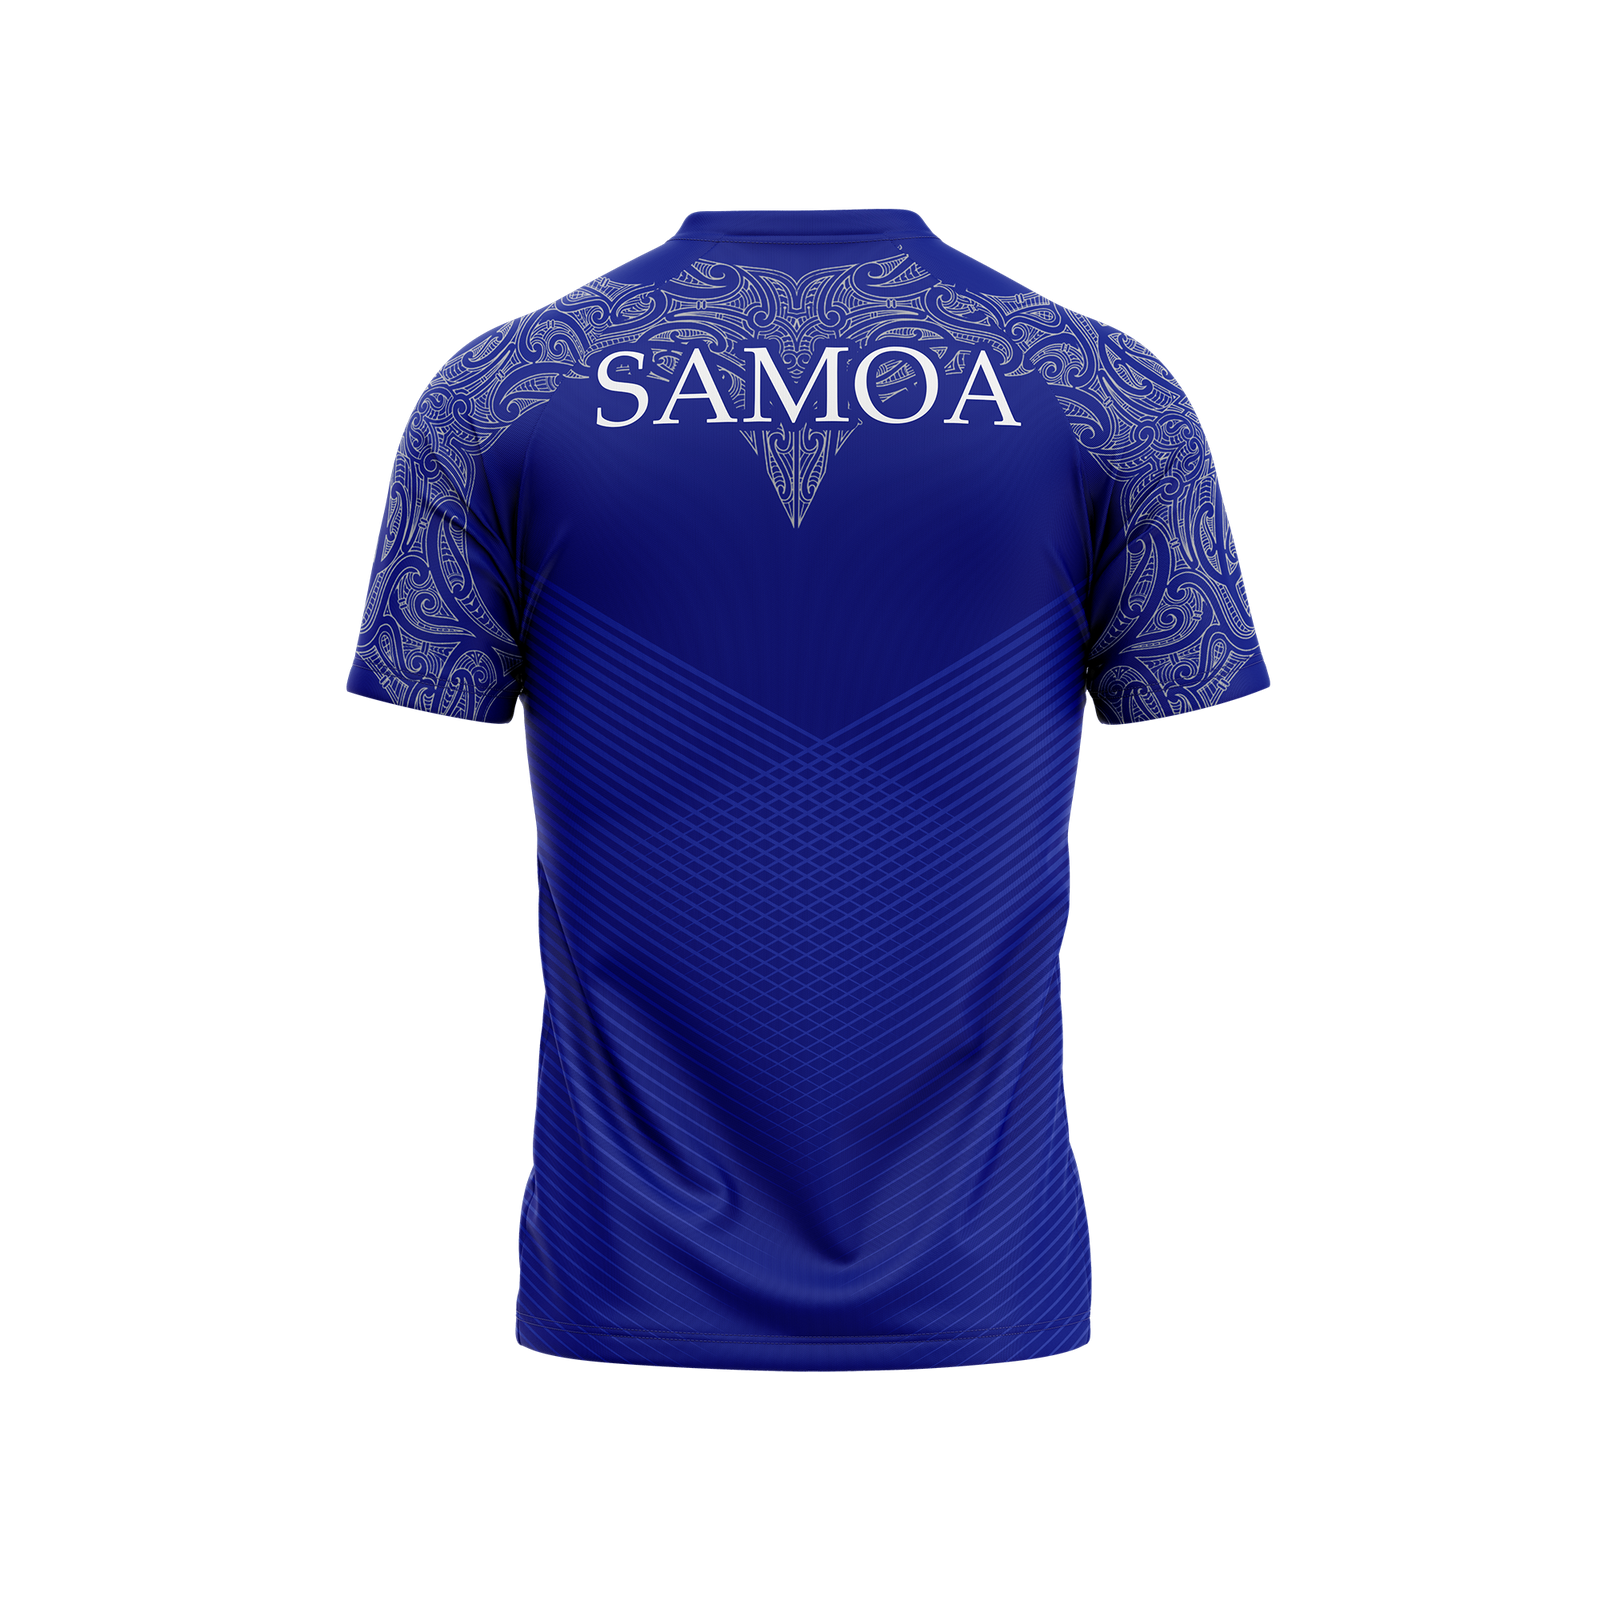 Womens Samoa Host Cities